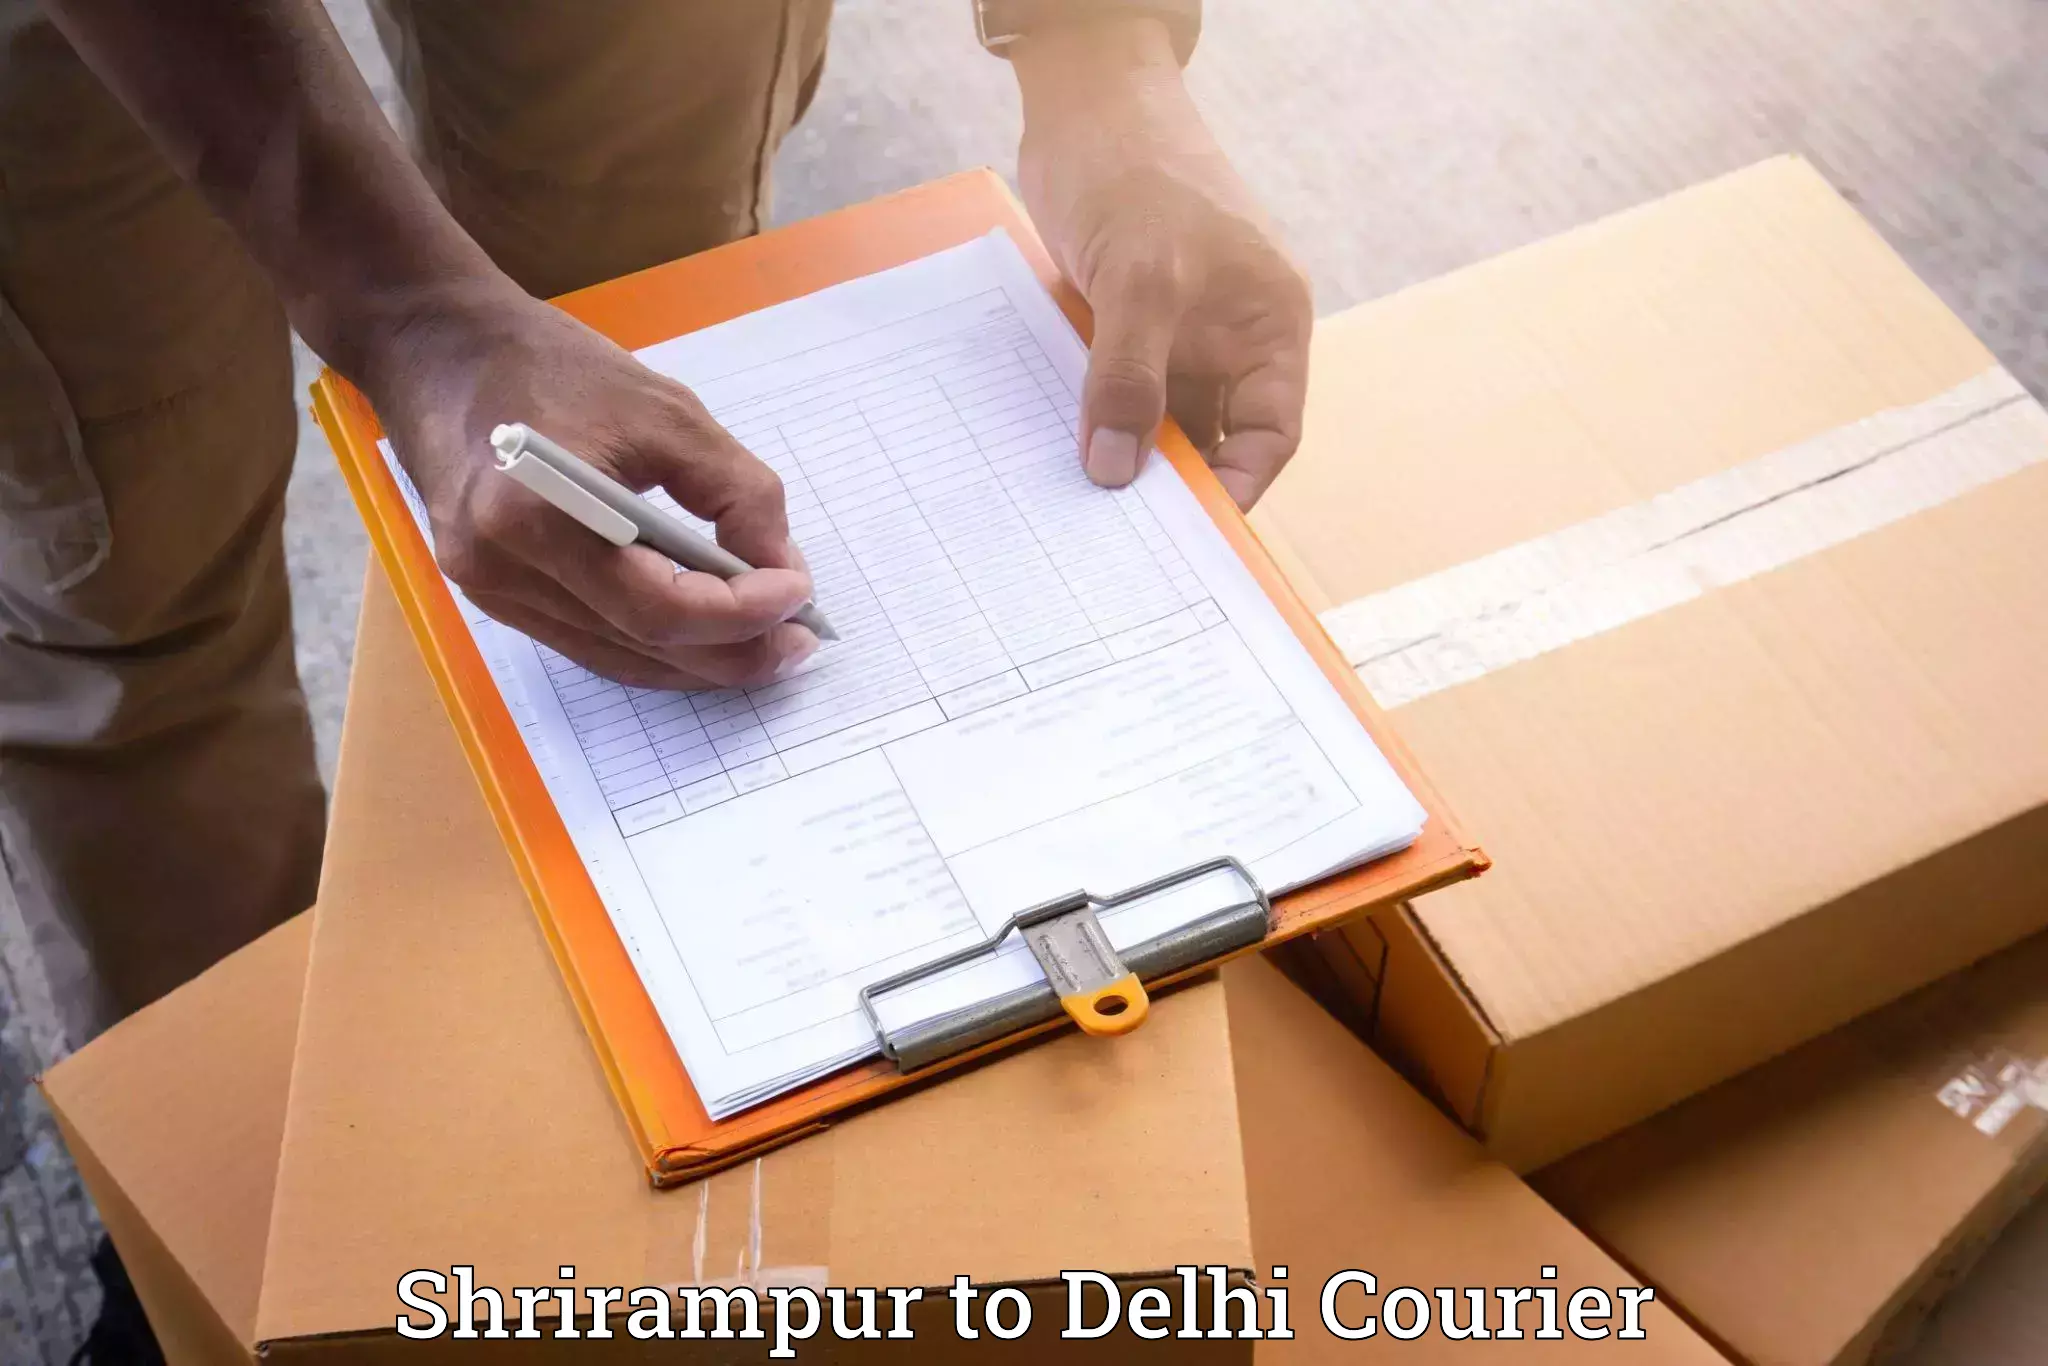 Door-to-door relocation services Shrirampur to NCR